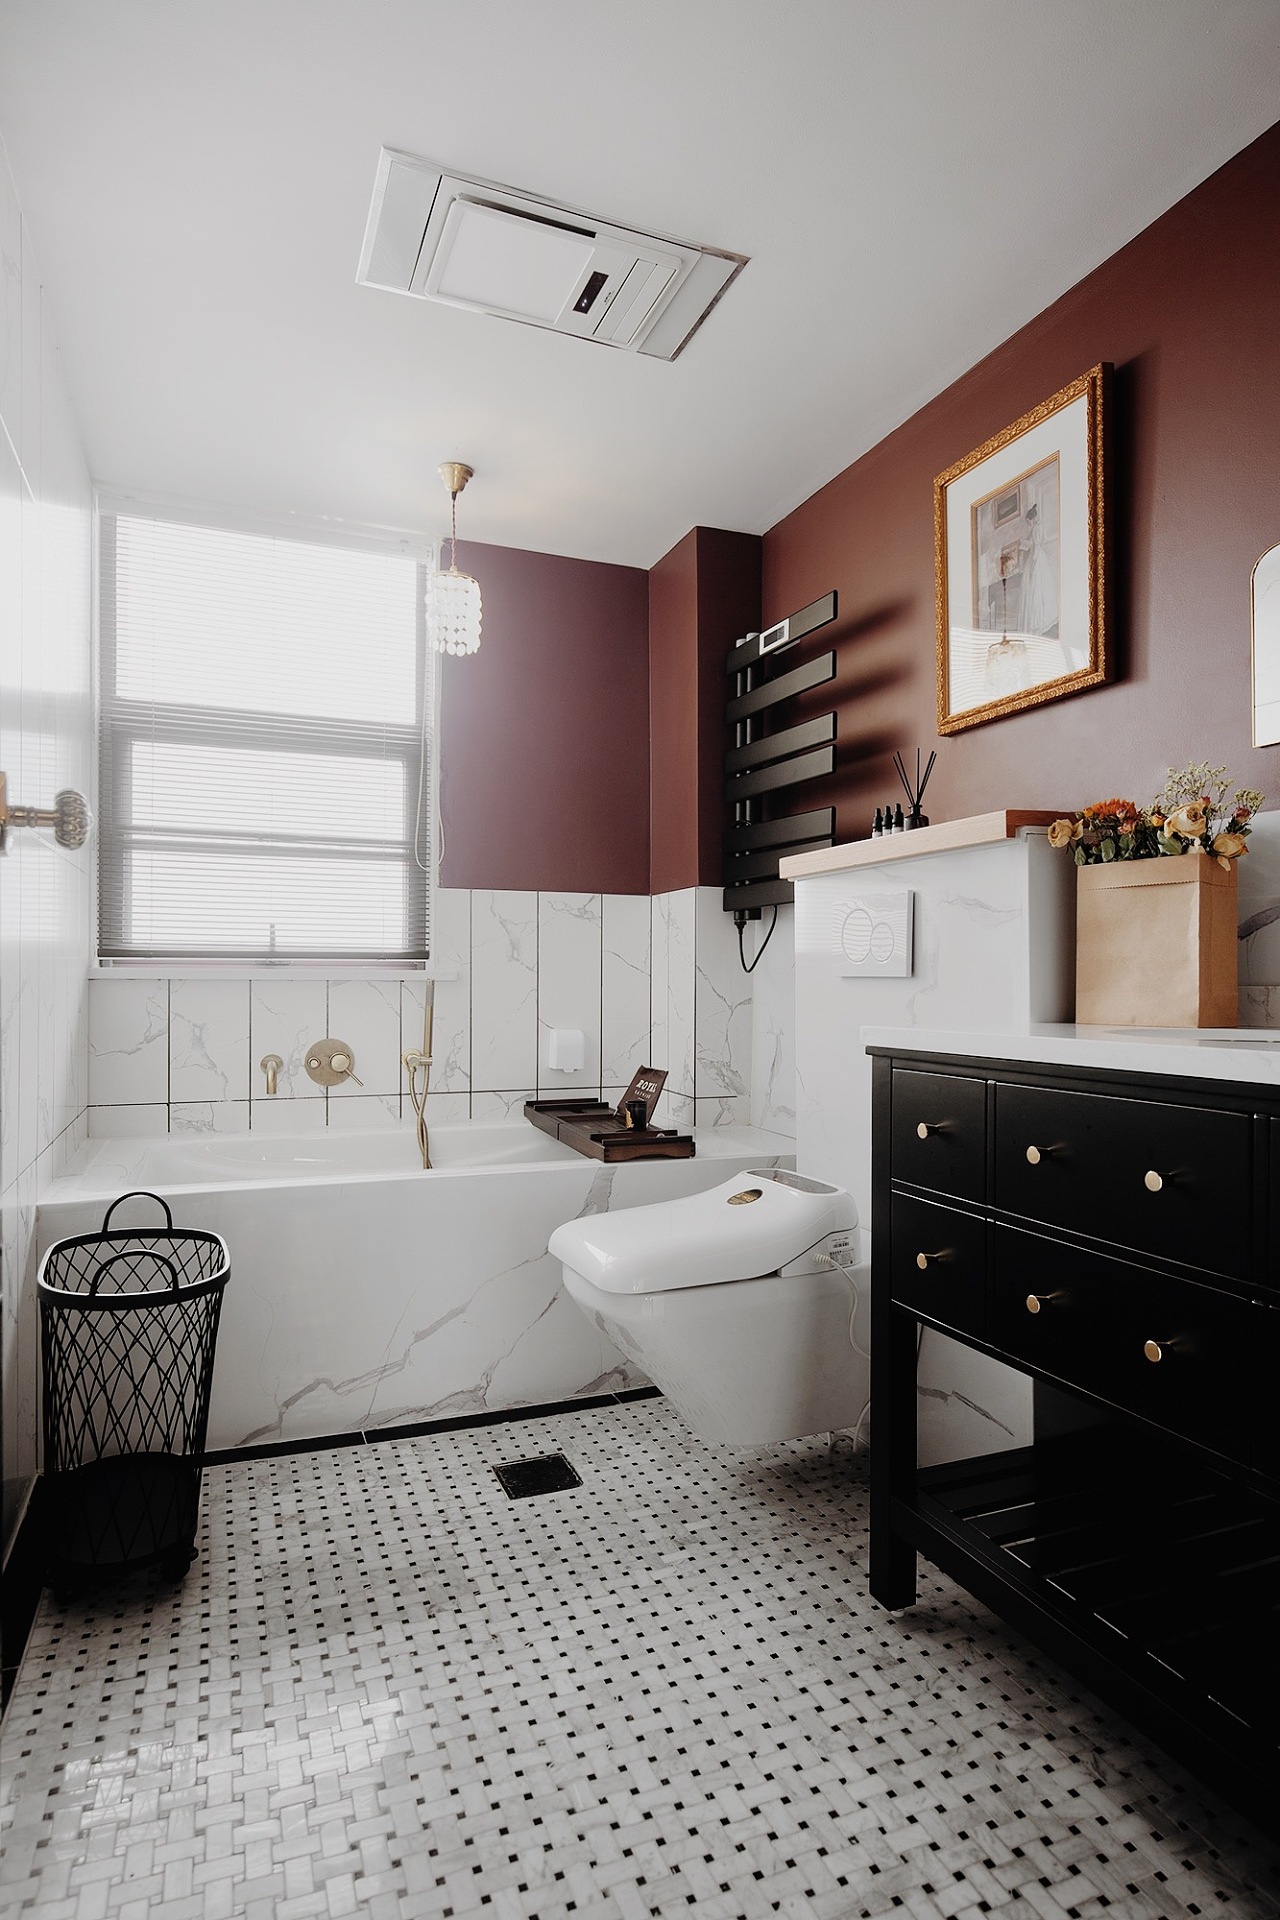 卫生间使用砖红色和黑色点缀，提升了空间气质，营造简约又不失品味的卫浴氛围。